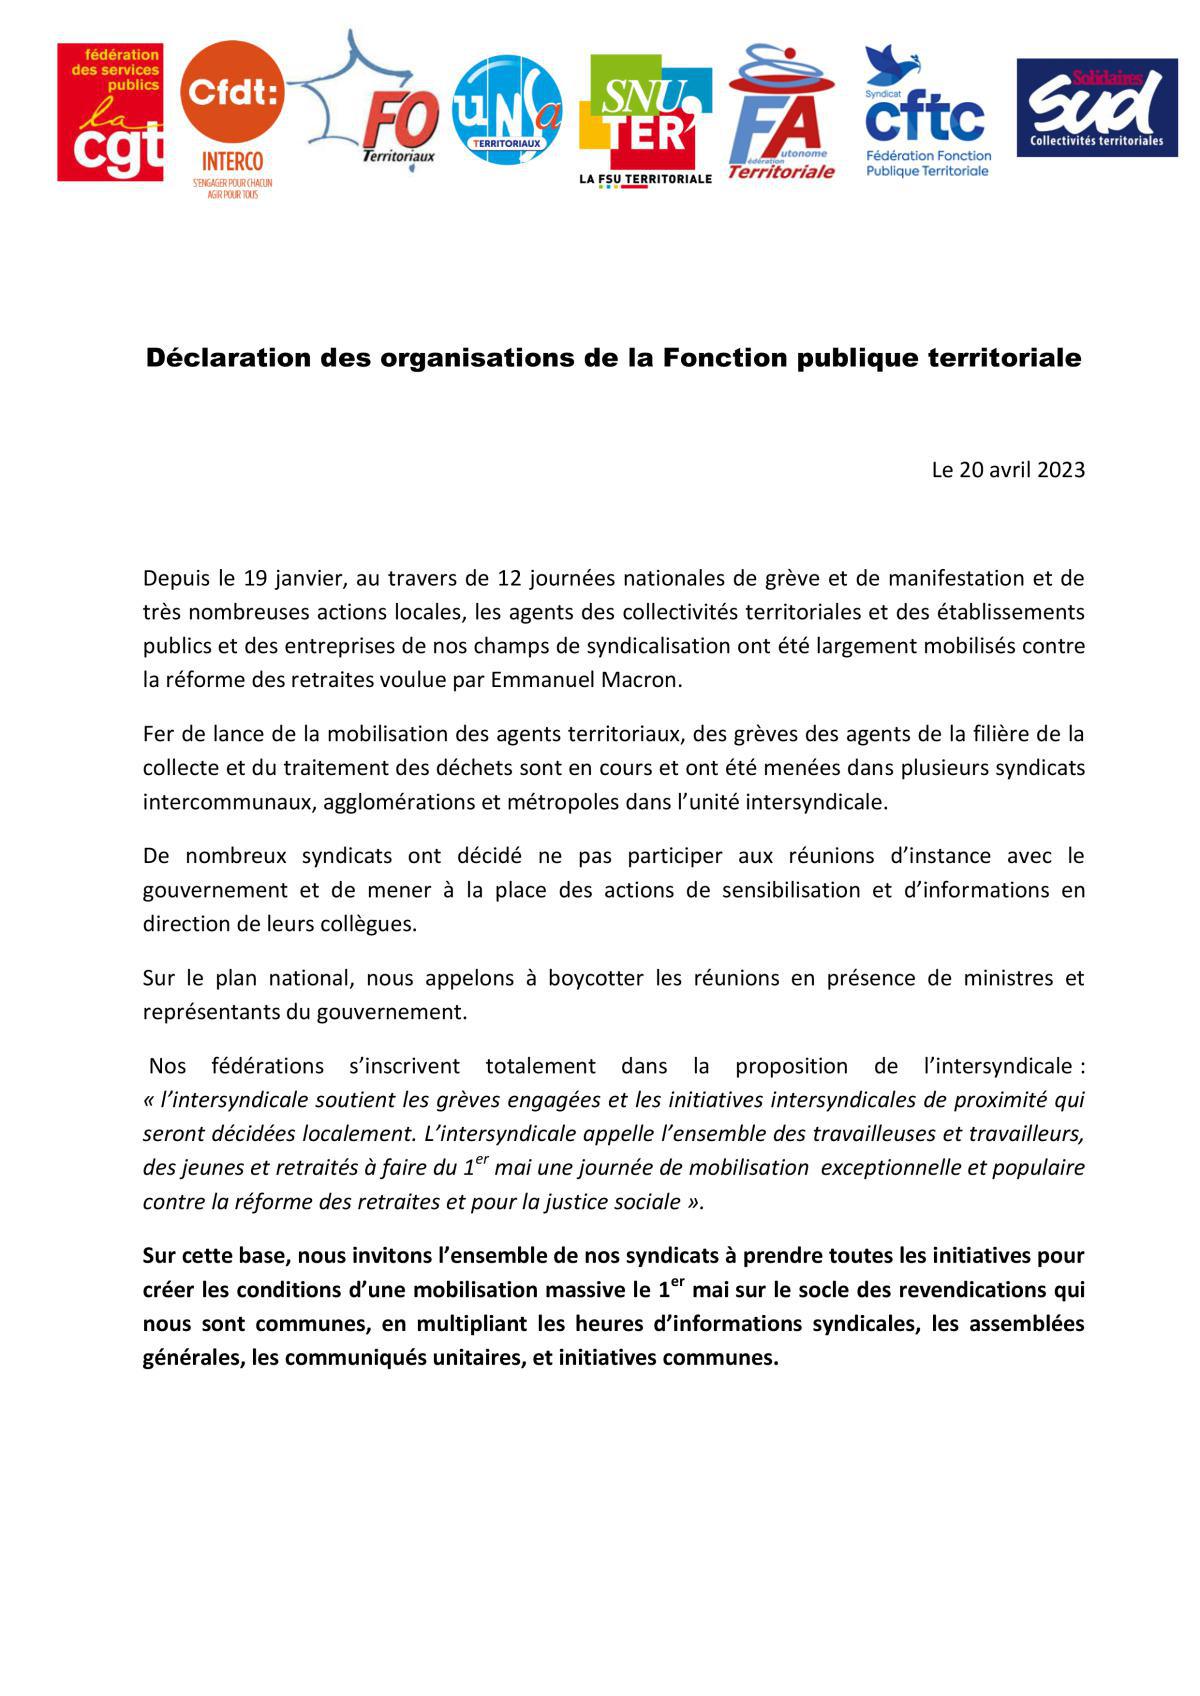 Déclaration des organisations de la Fonction publique territoriale 20.04.23